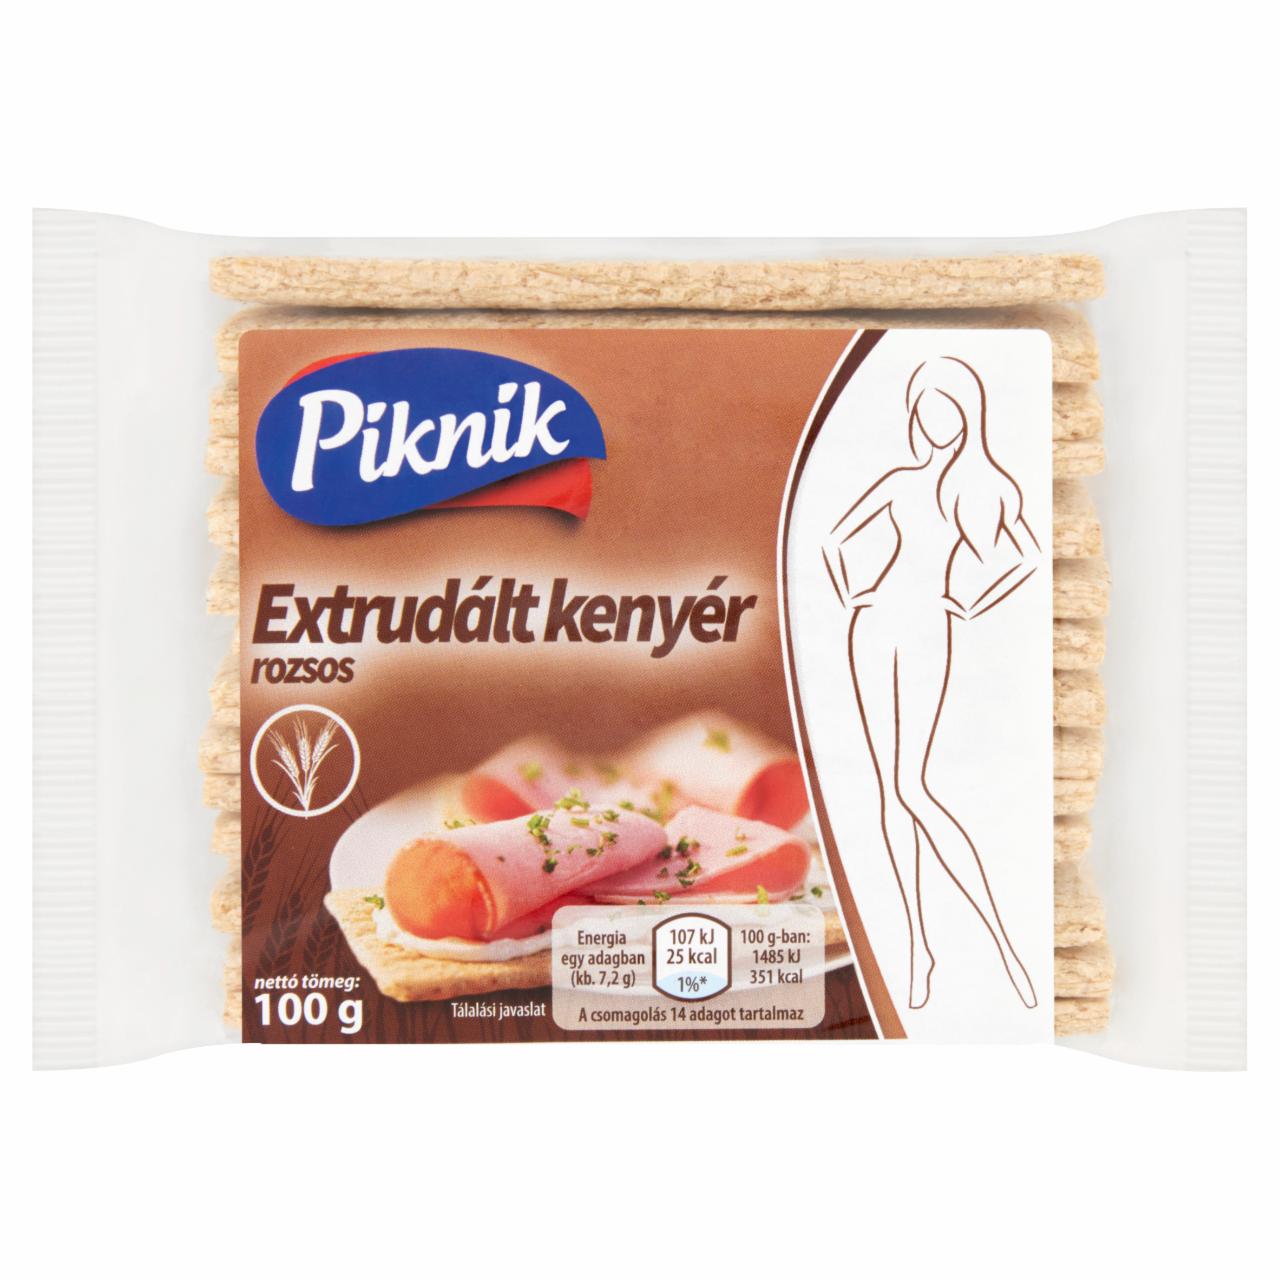 Képek - Piknik rozsos extrudált kenyér 100 g